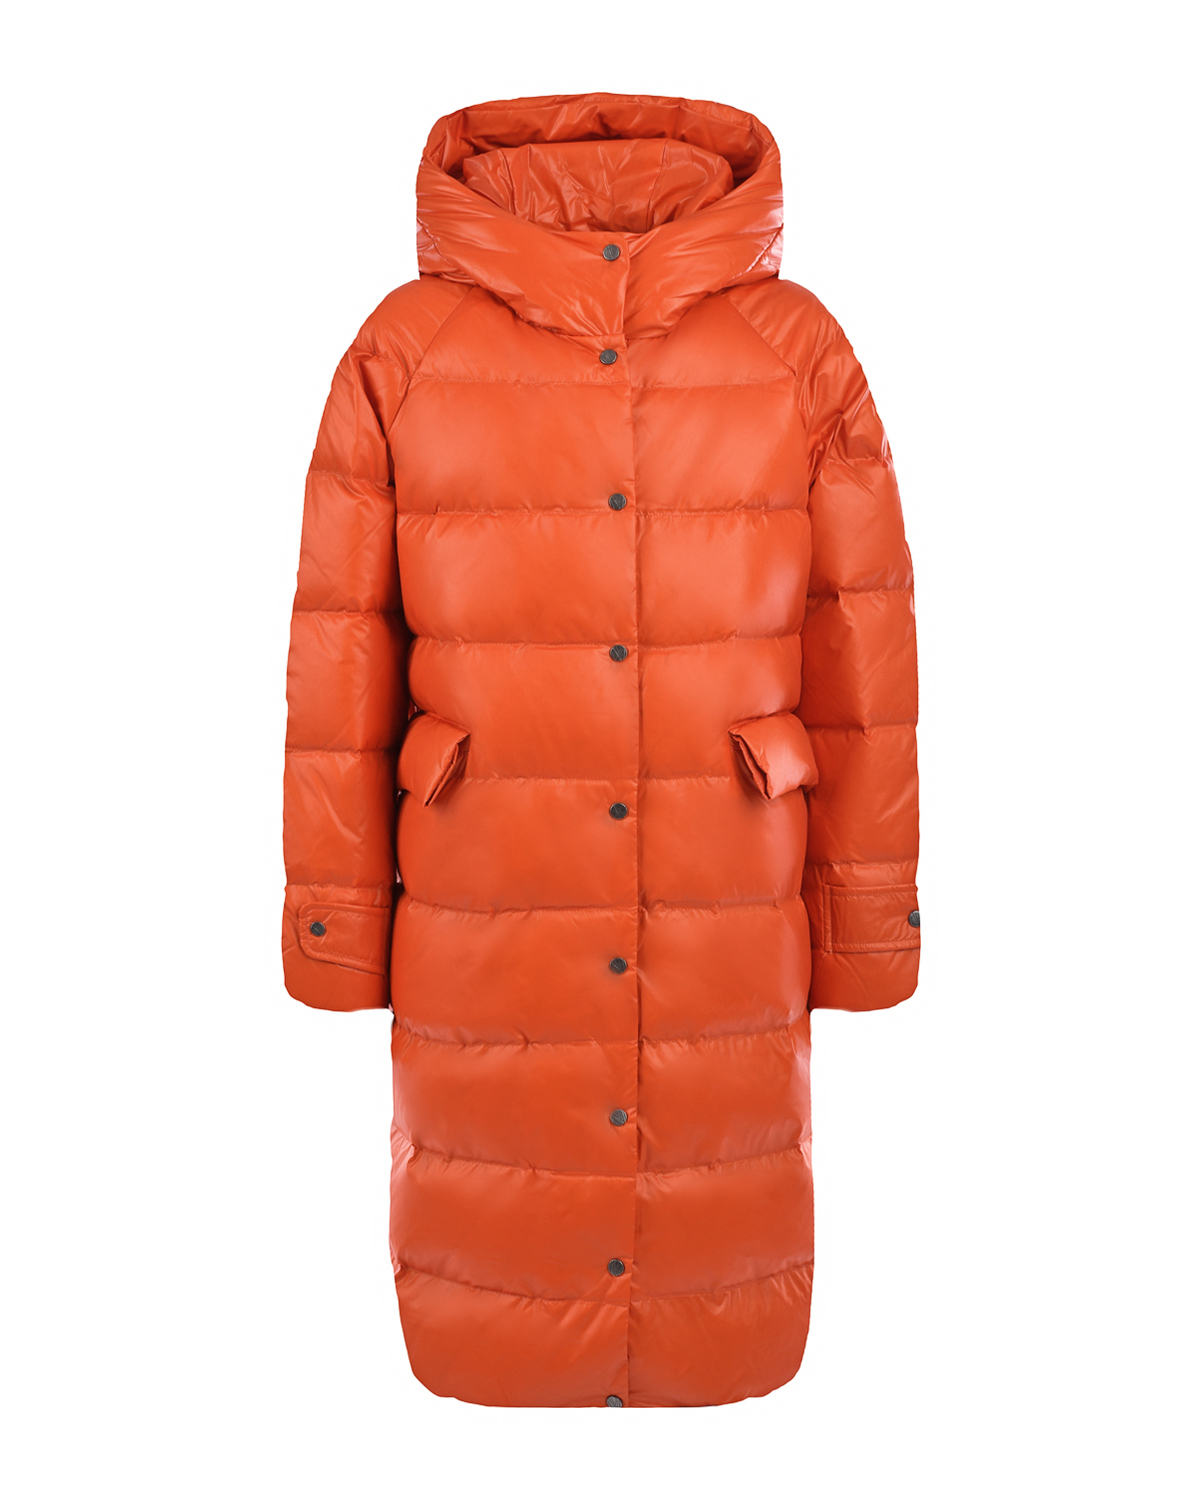 Оранжевое стеганое пальто-пуховик Naumi детское